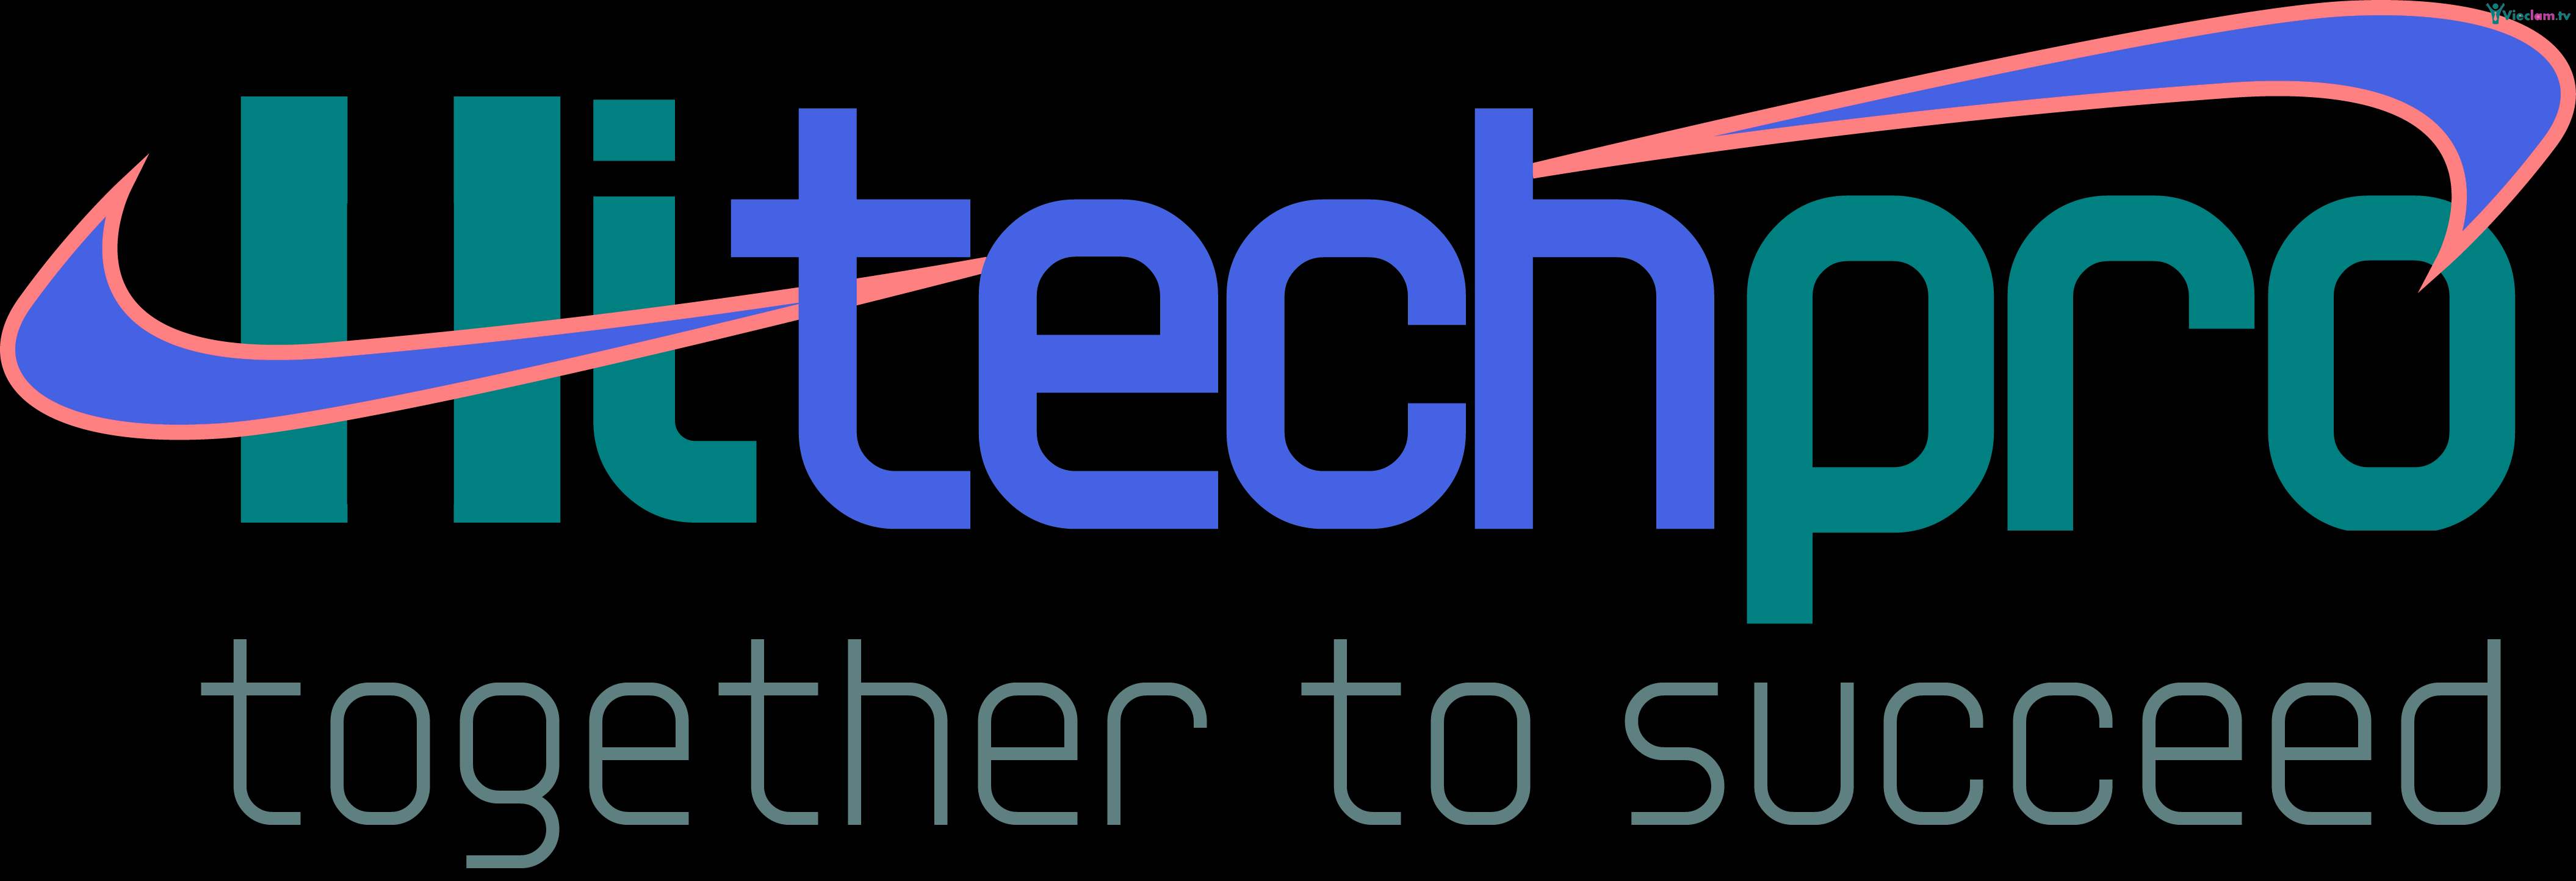 Logo Hitechpro LTD